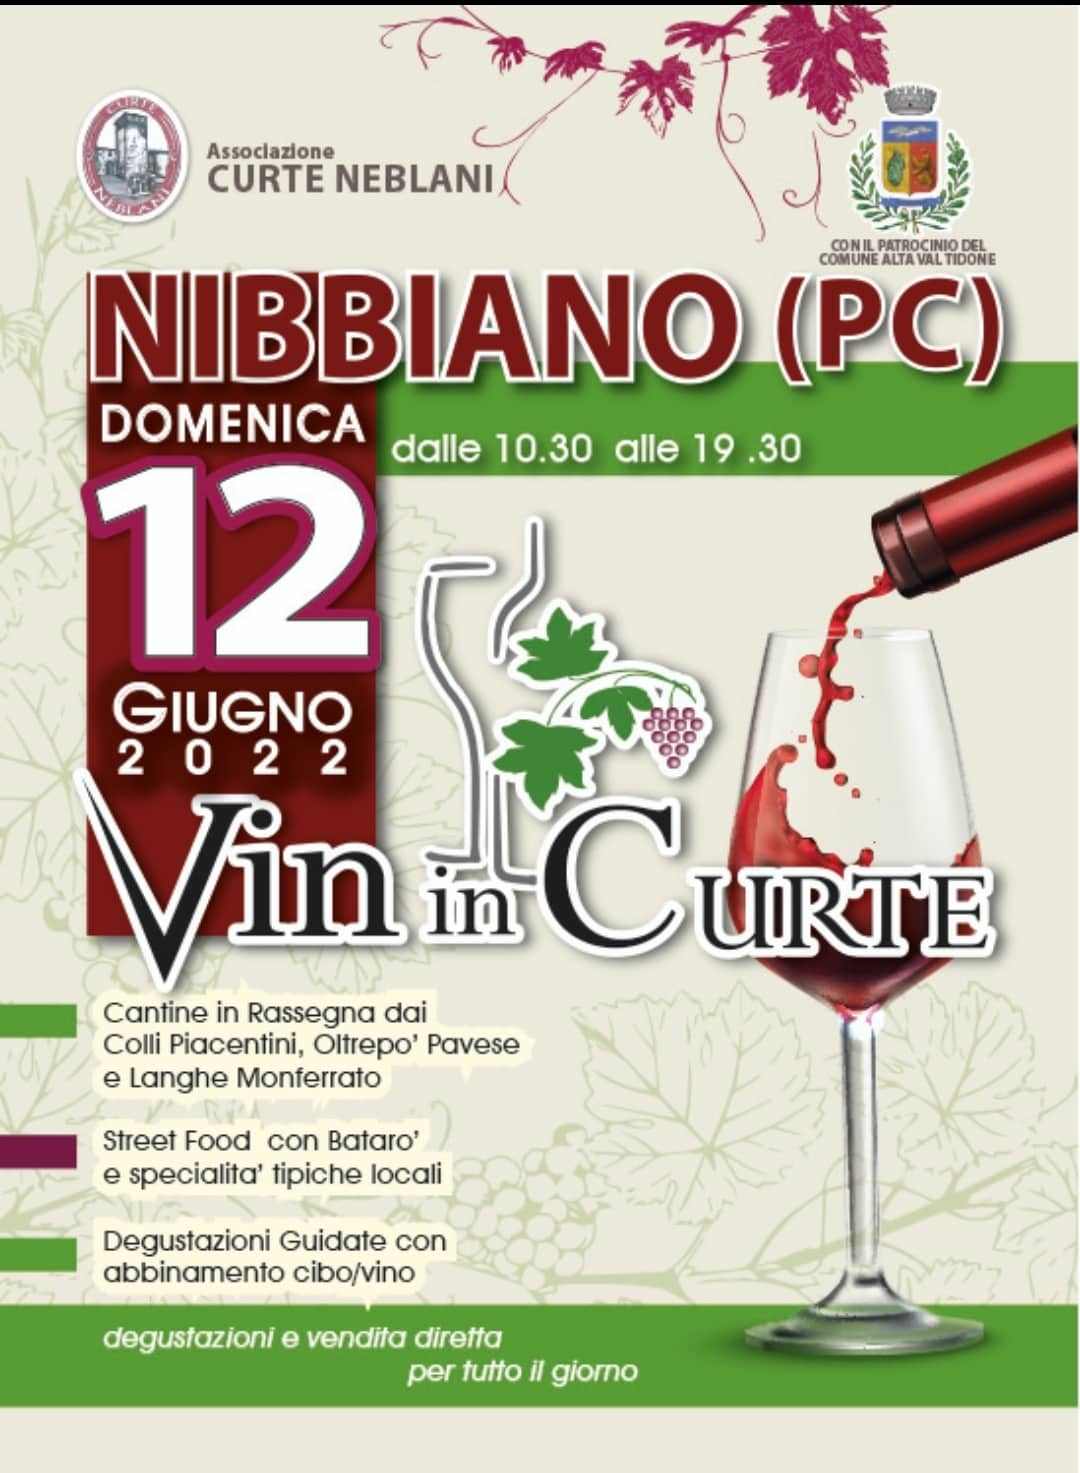 Nibbiano (PC)
"Vin in Curte" 
8 Maggio 2022